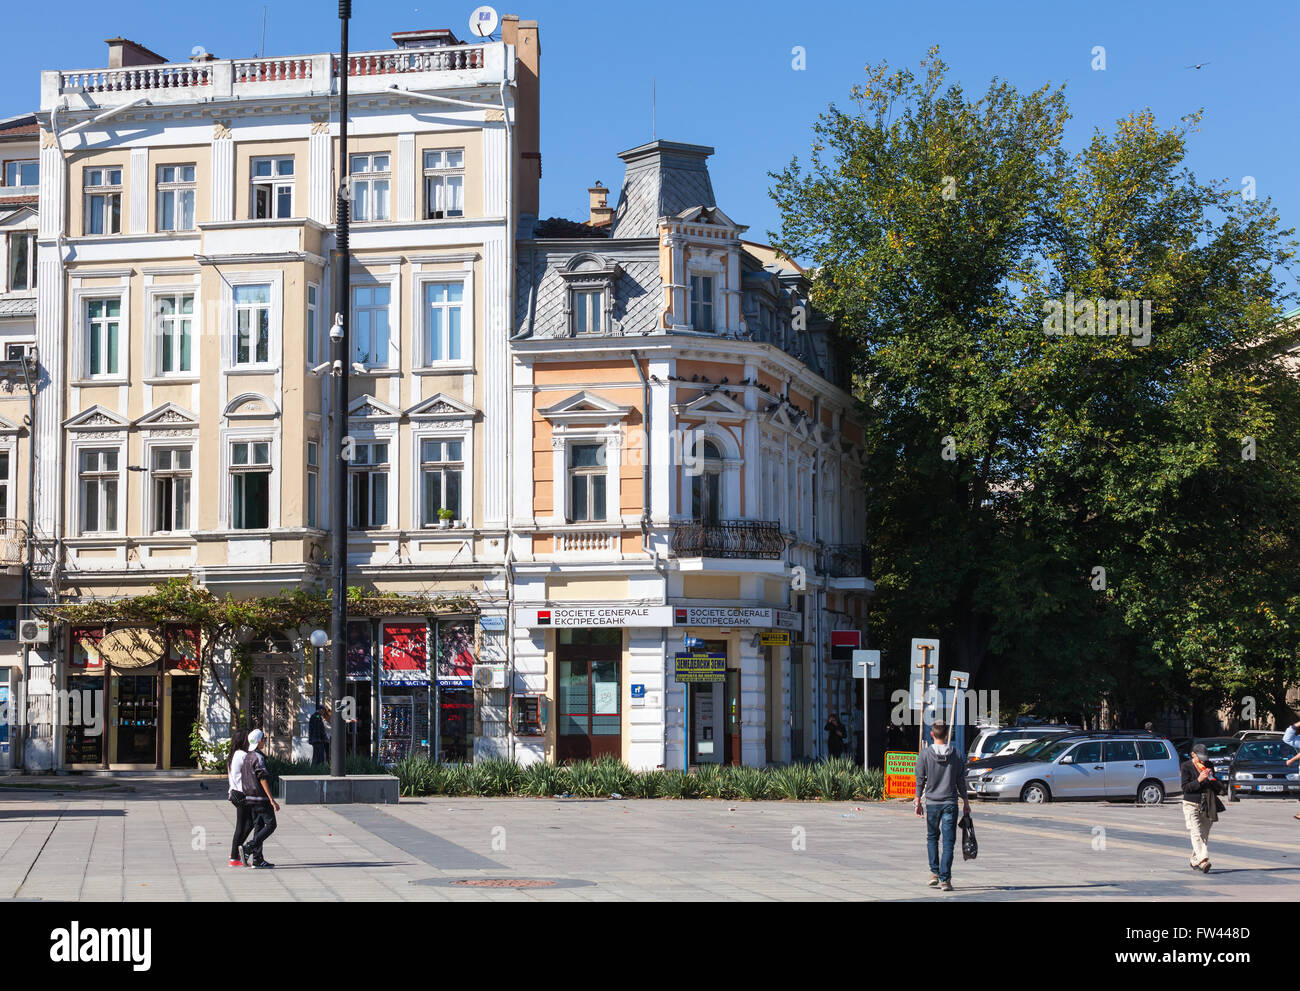 Ruse, Bulgaria - 29 Settembre 2014: Street view con i normali cittadini a piedi sulla piazza della città Foto Stock